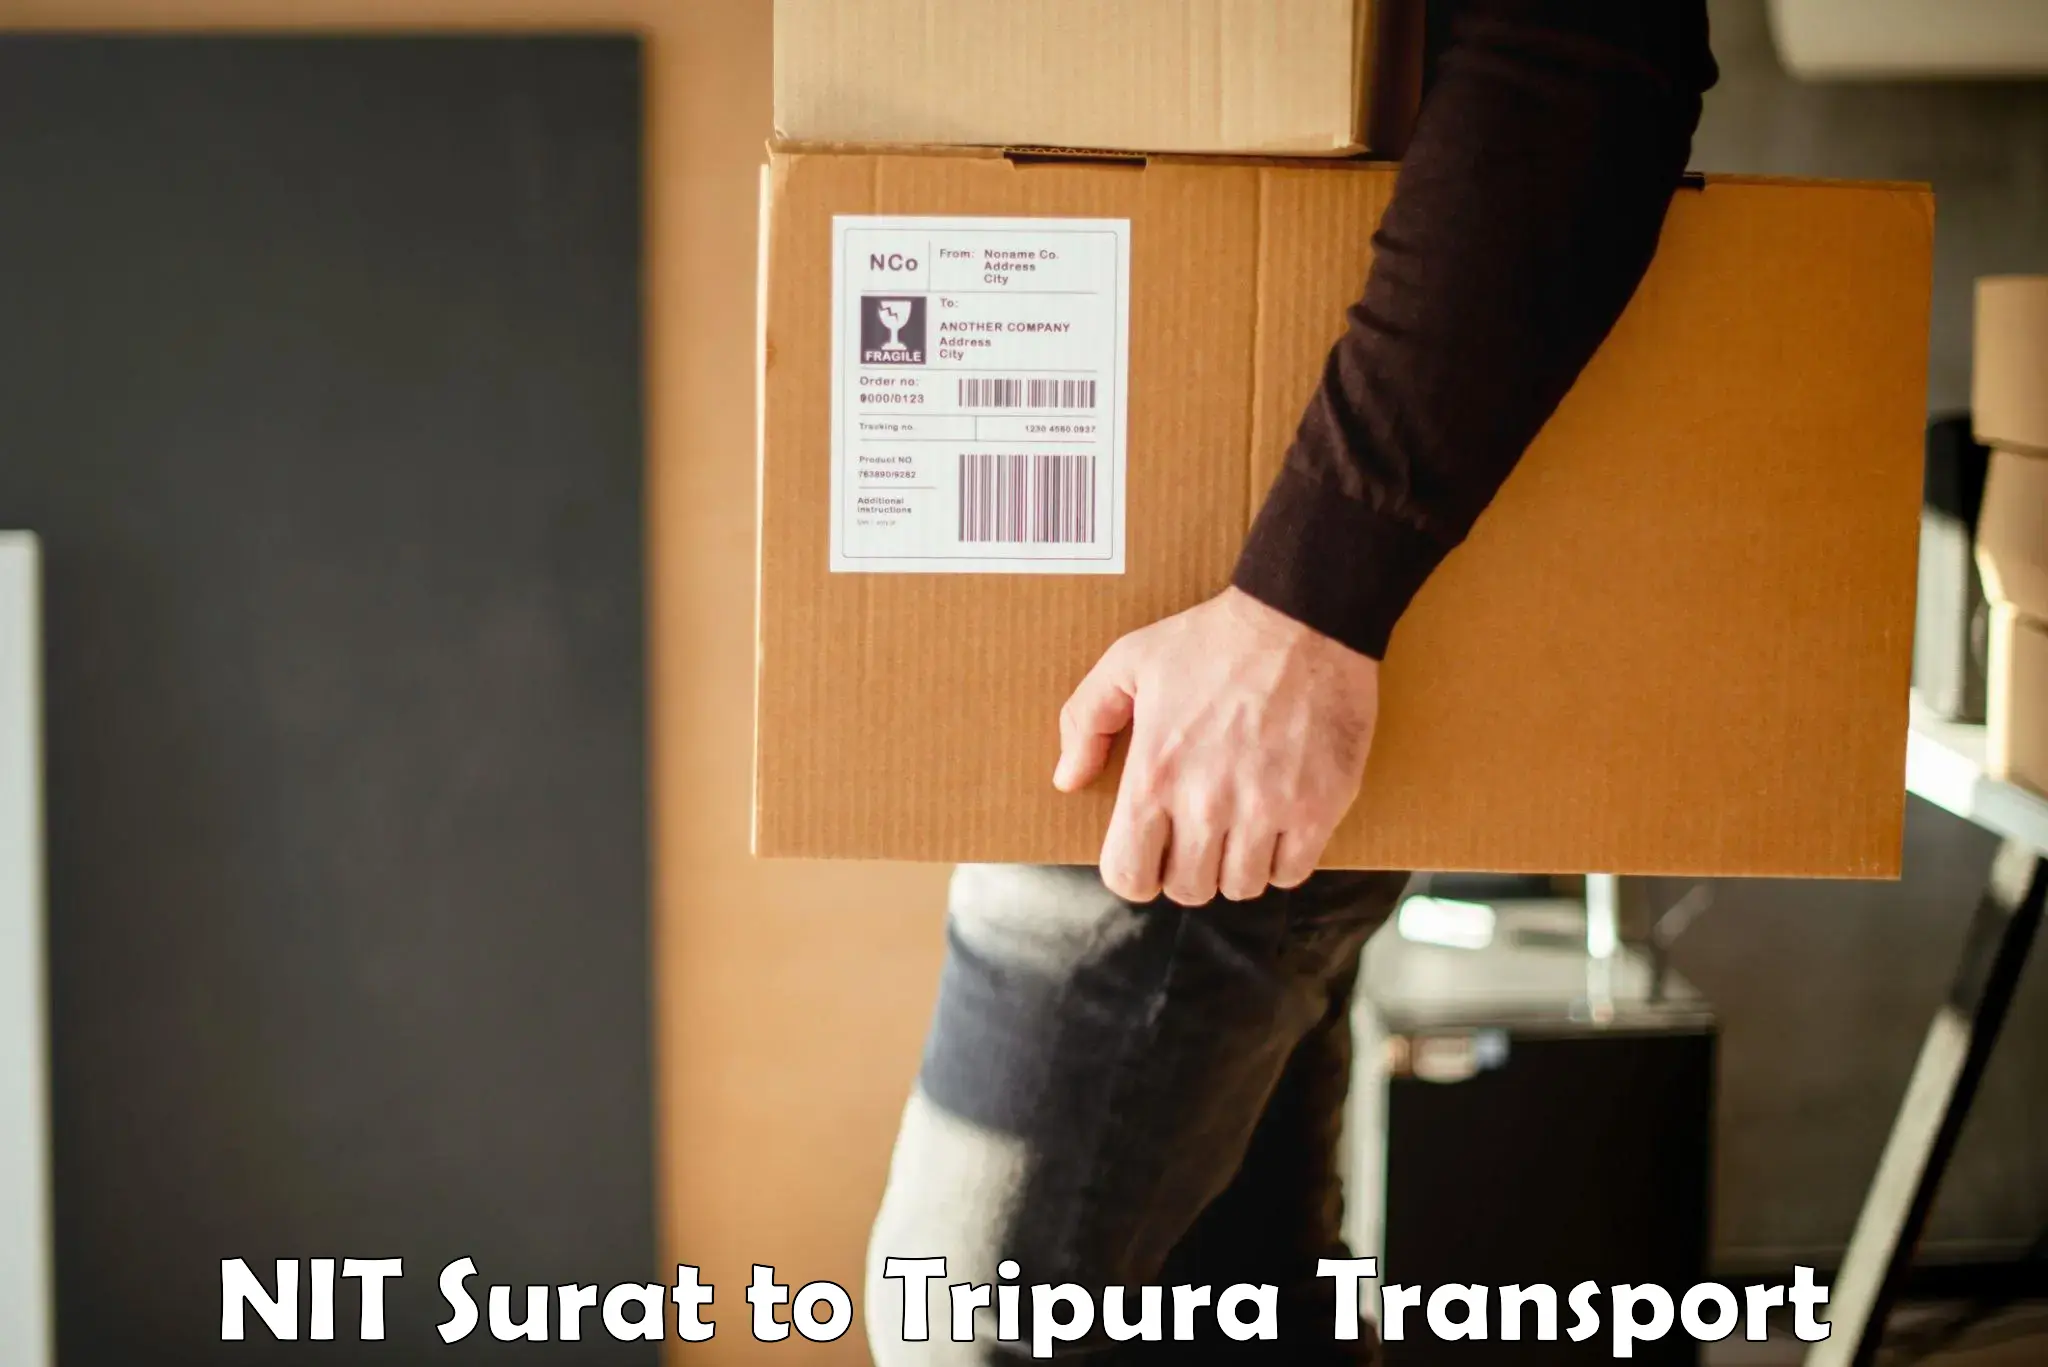 Daily transport service NIT Surat to Bishalgarh